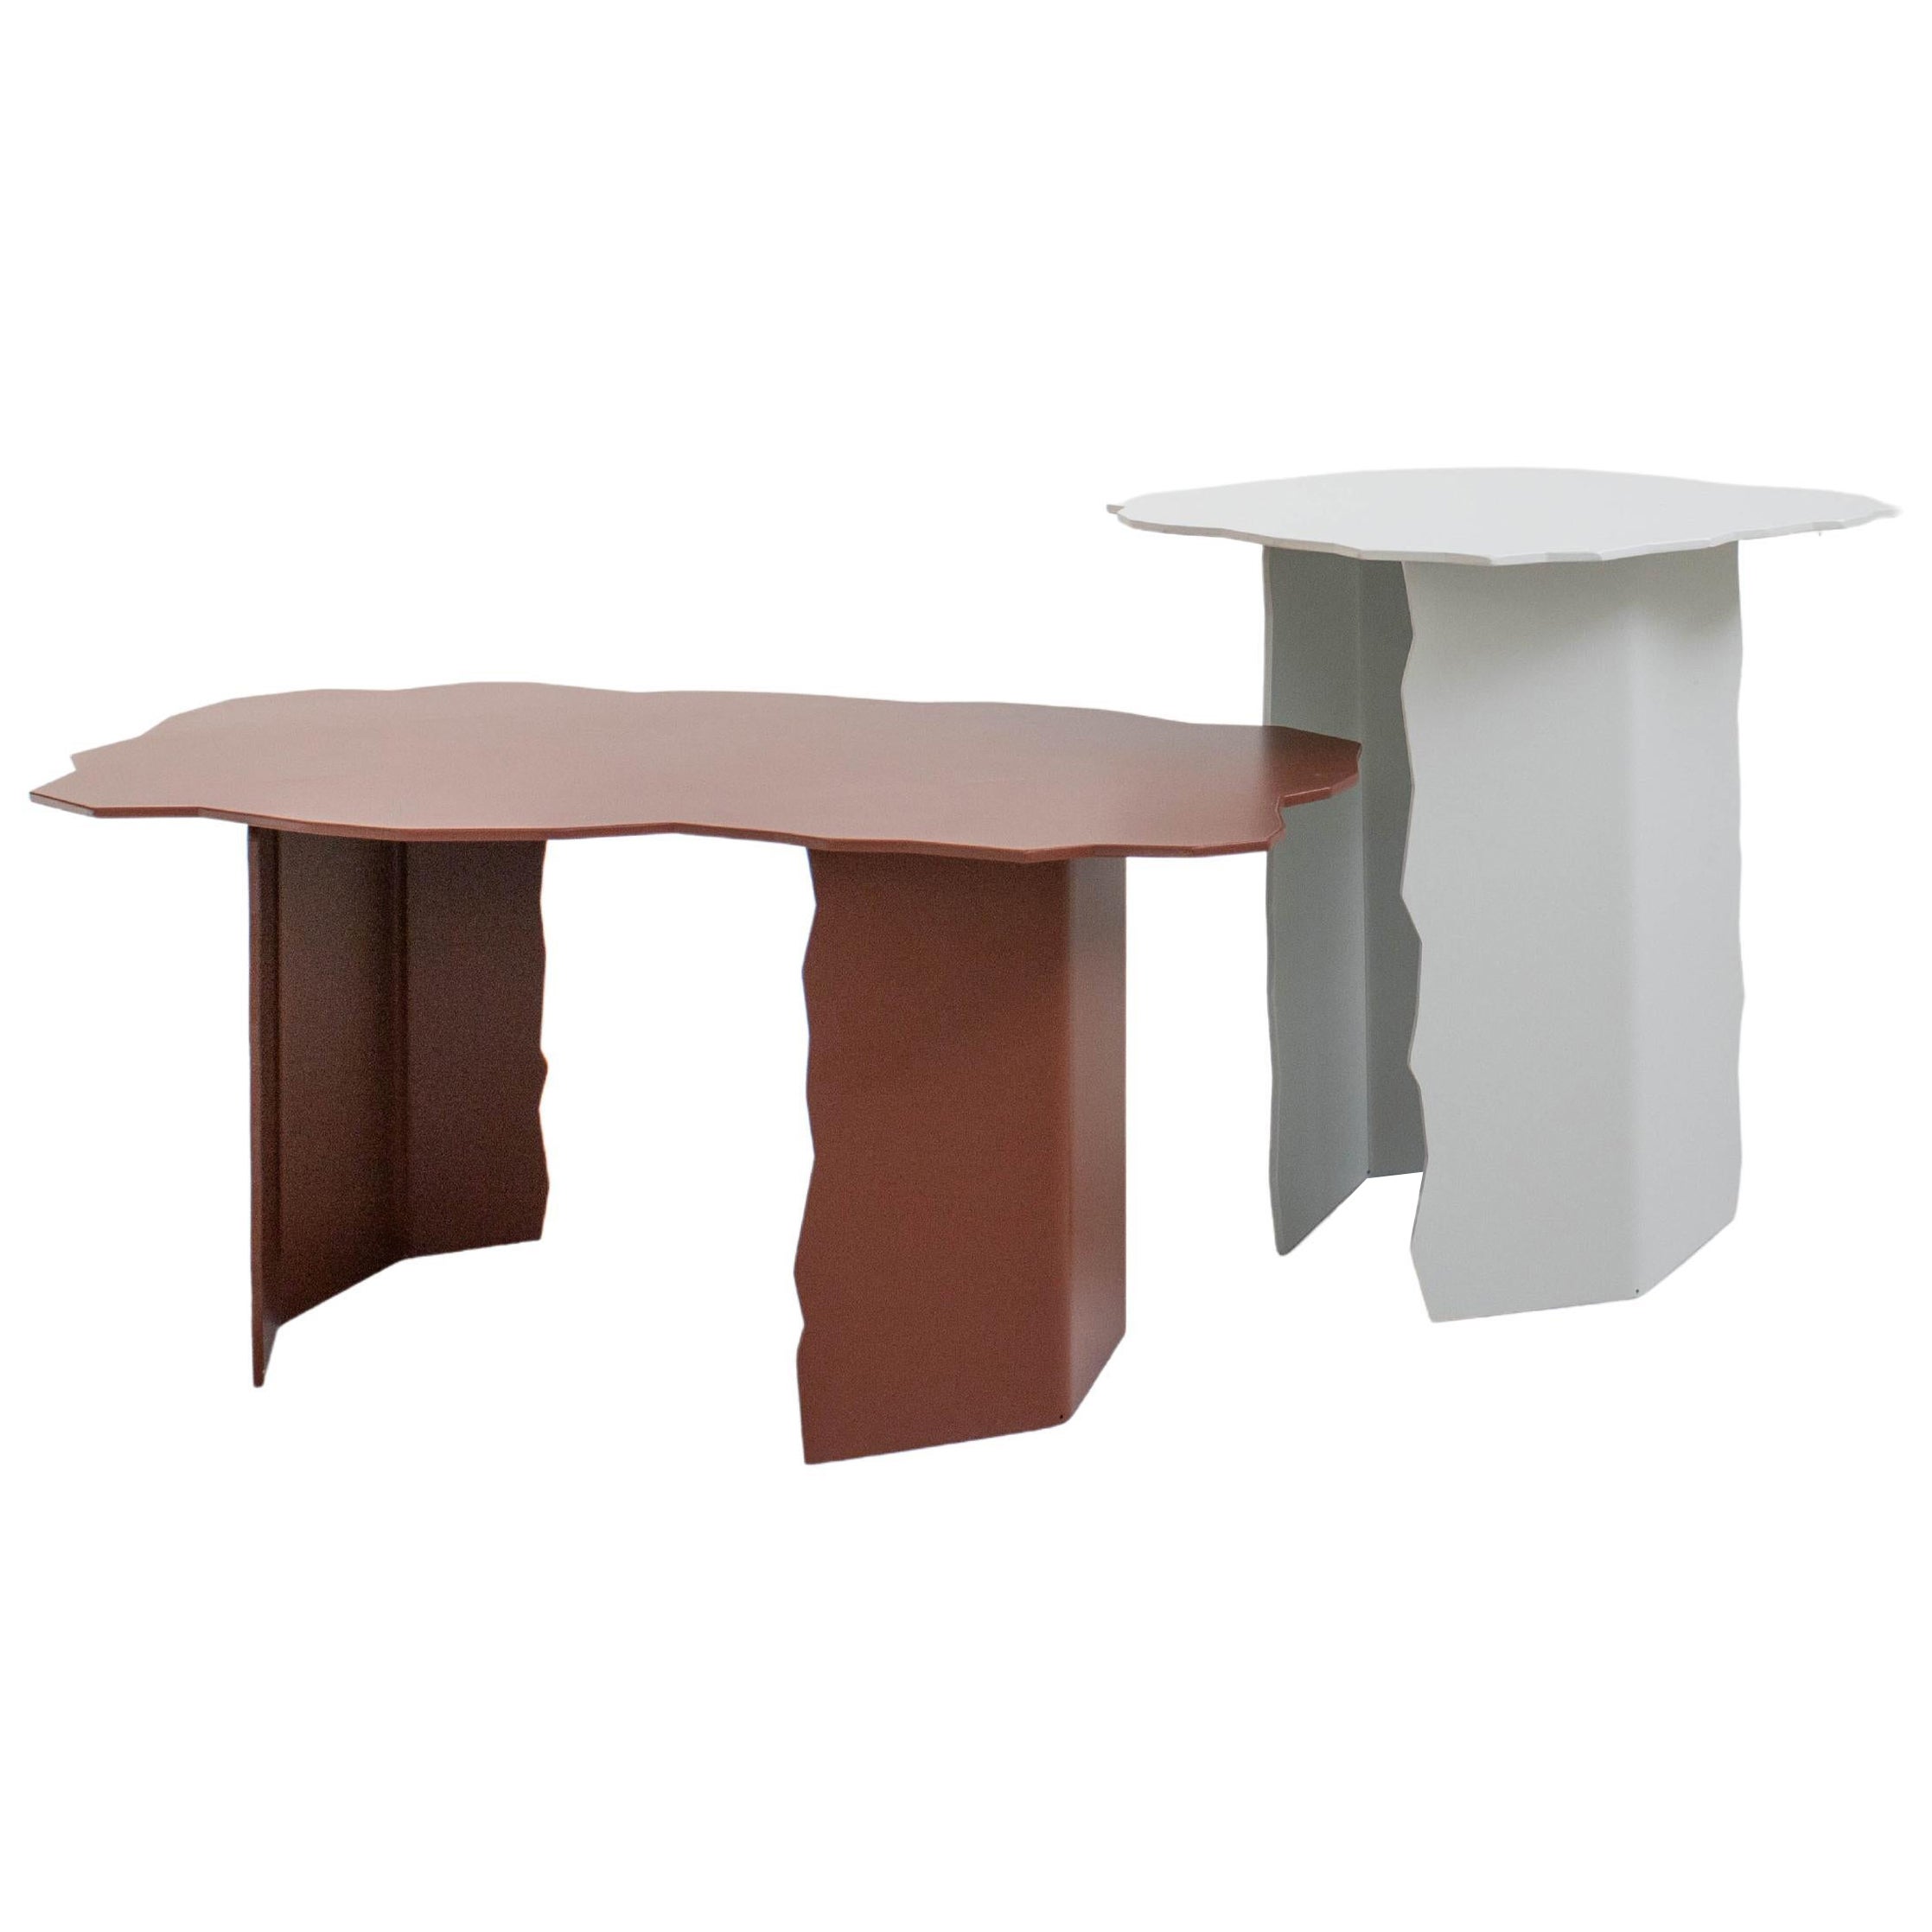 Set of 2 Disrupt Tables by Arne Desmet For Sale